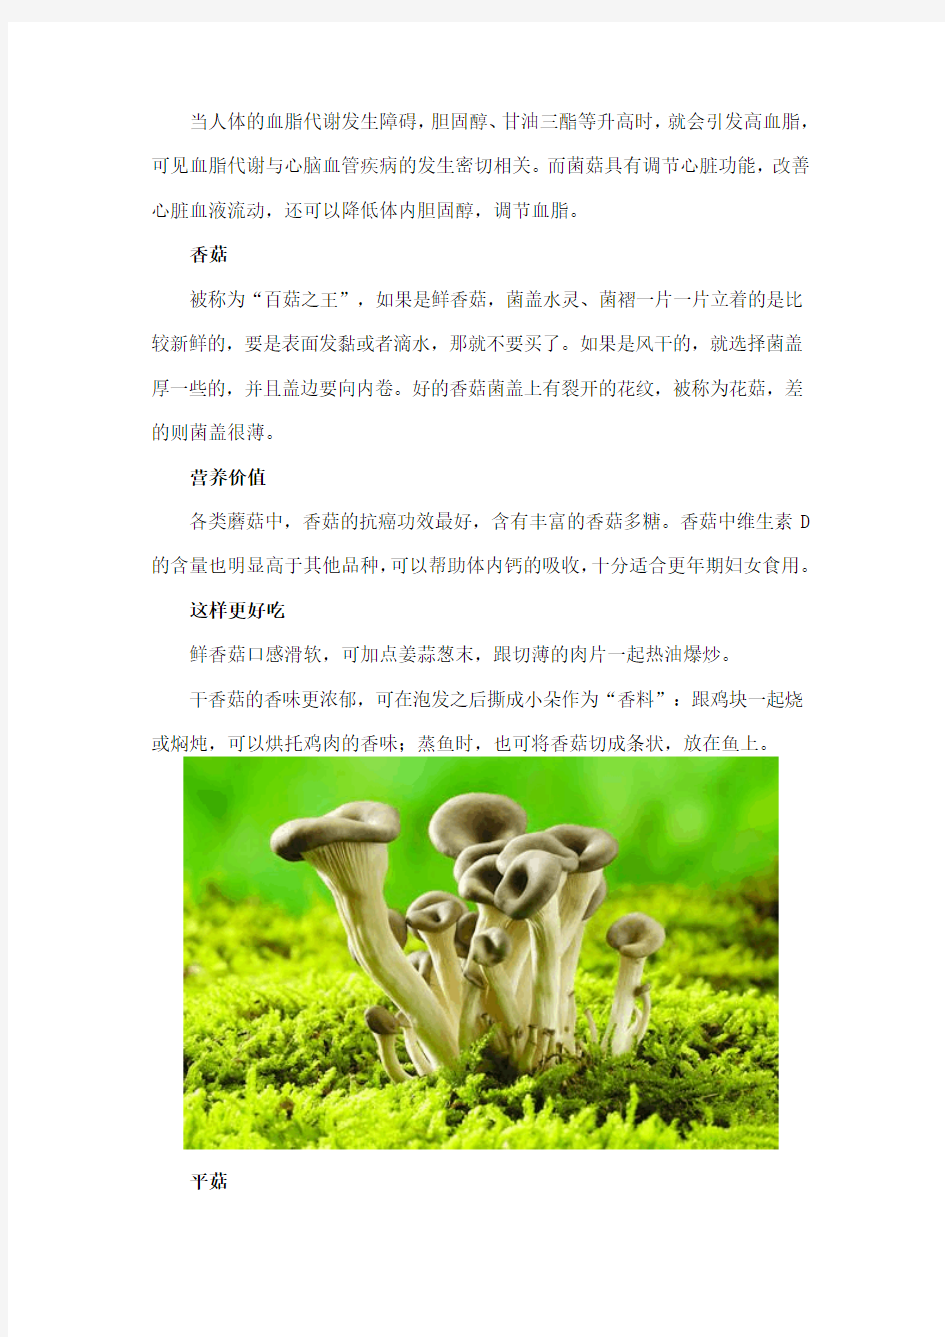 秋季多吃6种蘑菇增强免疫力